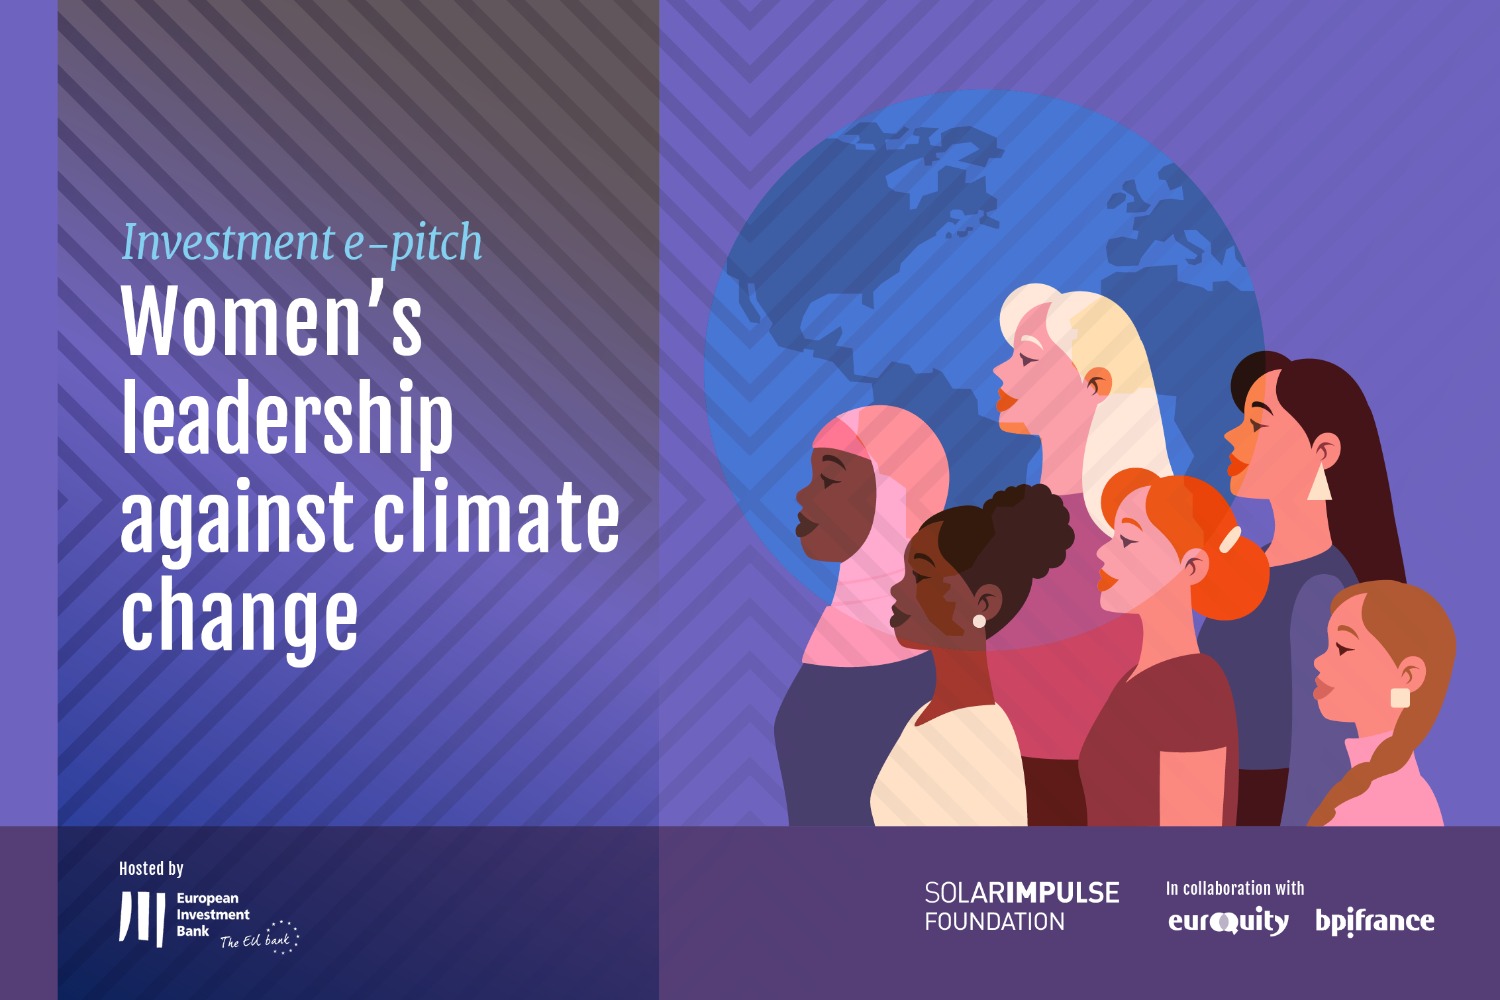 E-Pitch Solar Impulse Investment - "El liderazgo de las mujeres contra el cambio climático" 